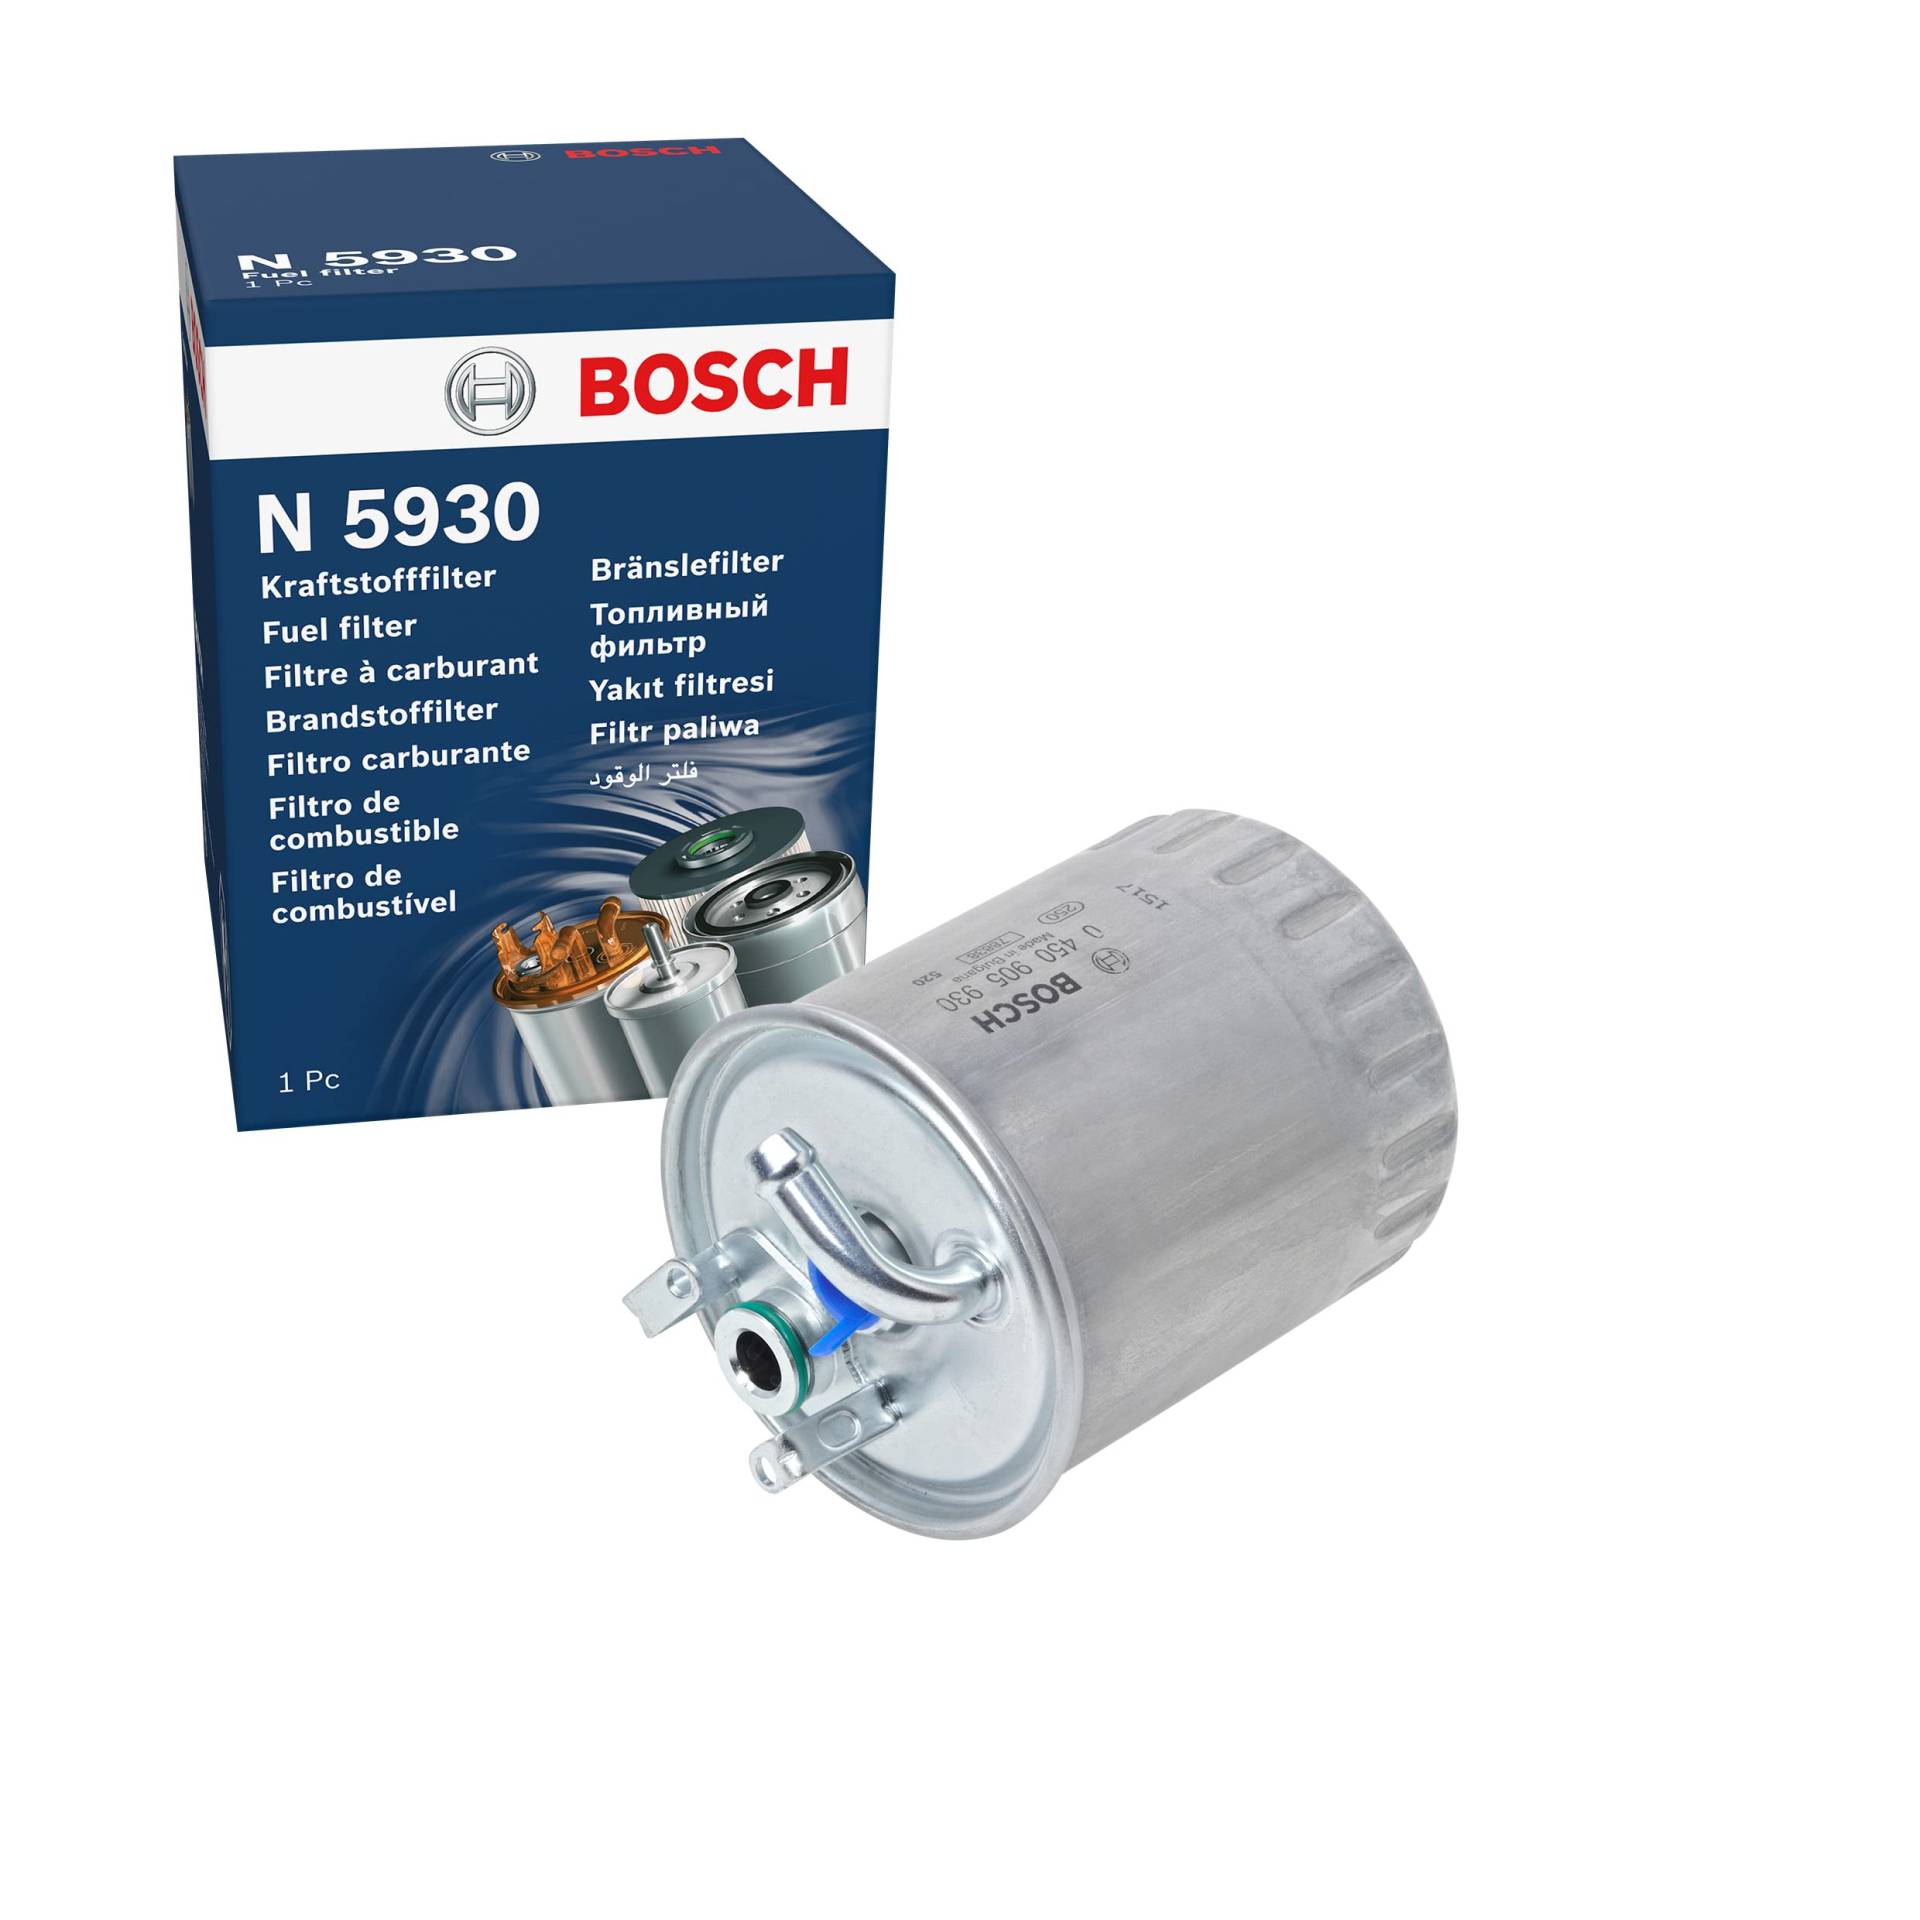 Bosch N5930 - Dieselfilter Auto von Bosch Automotive